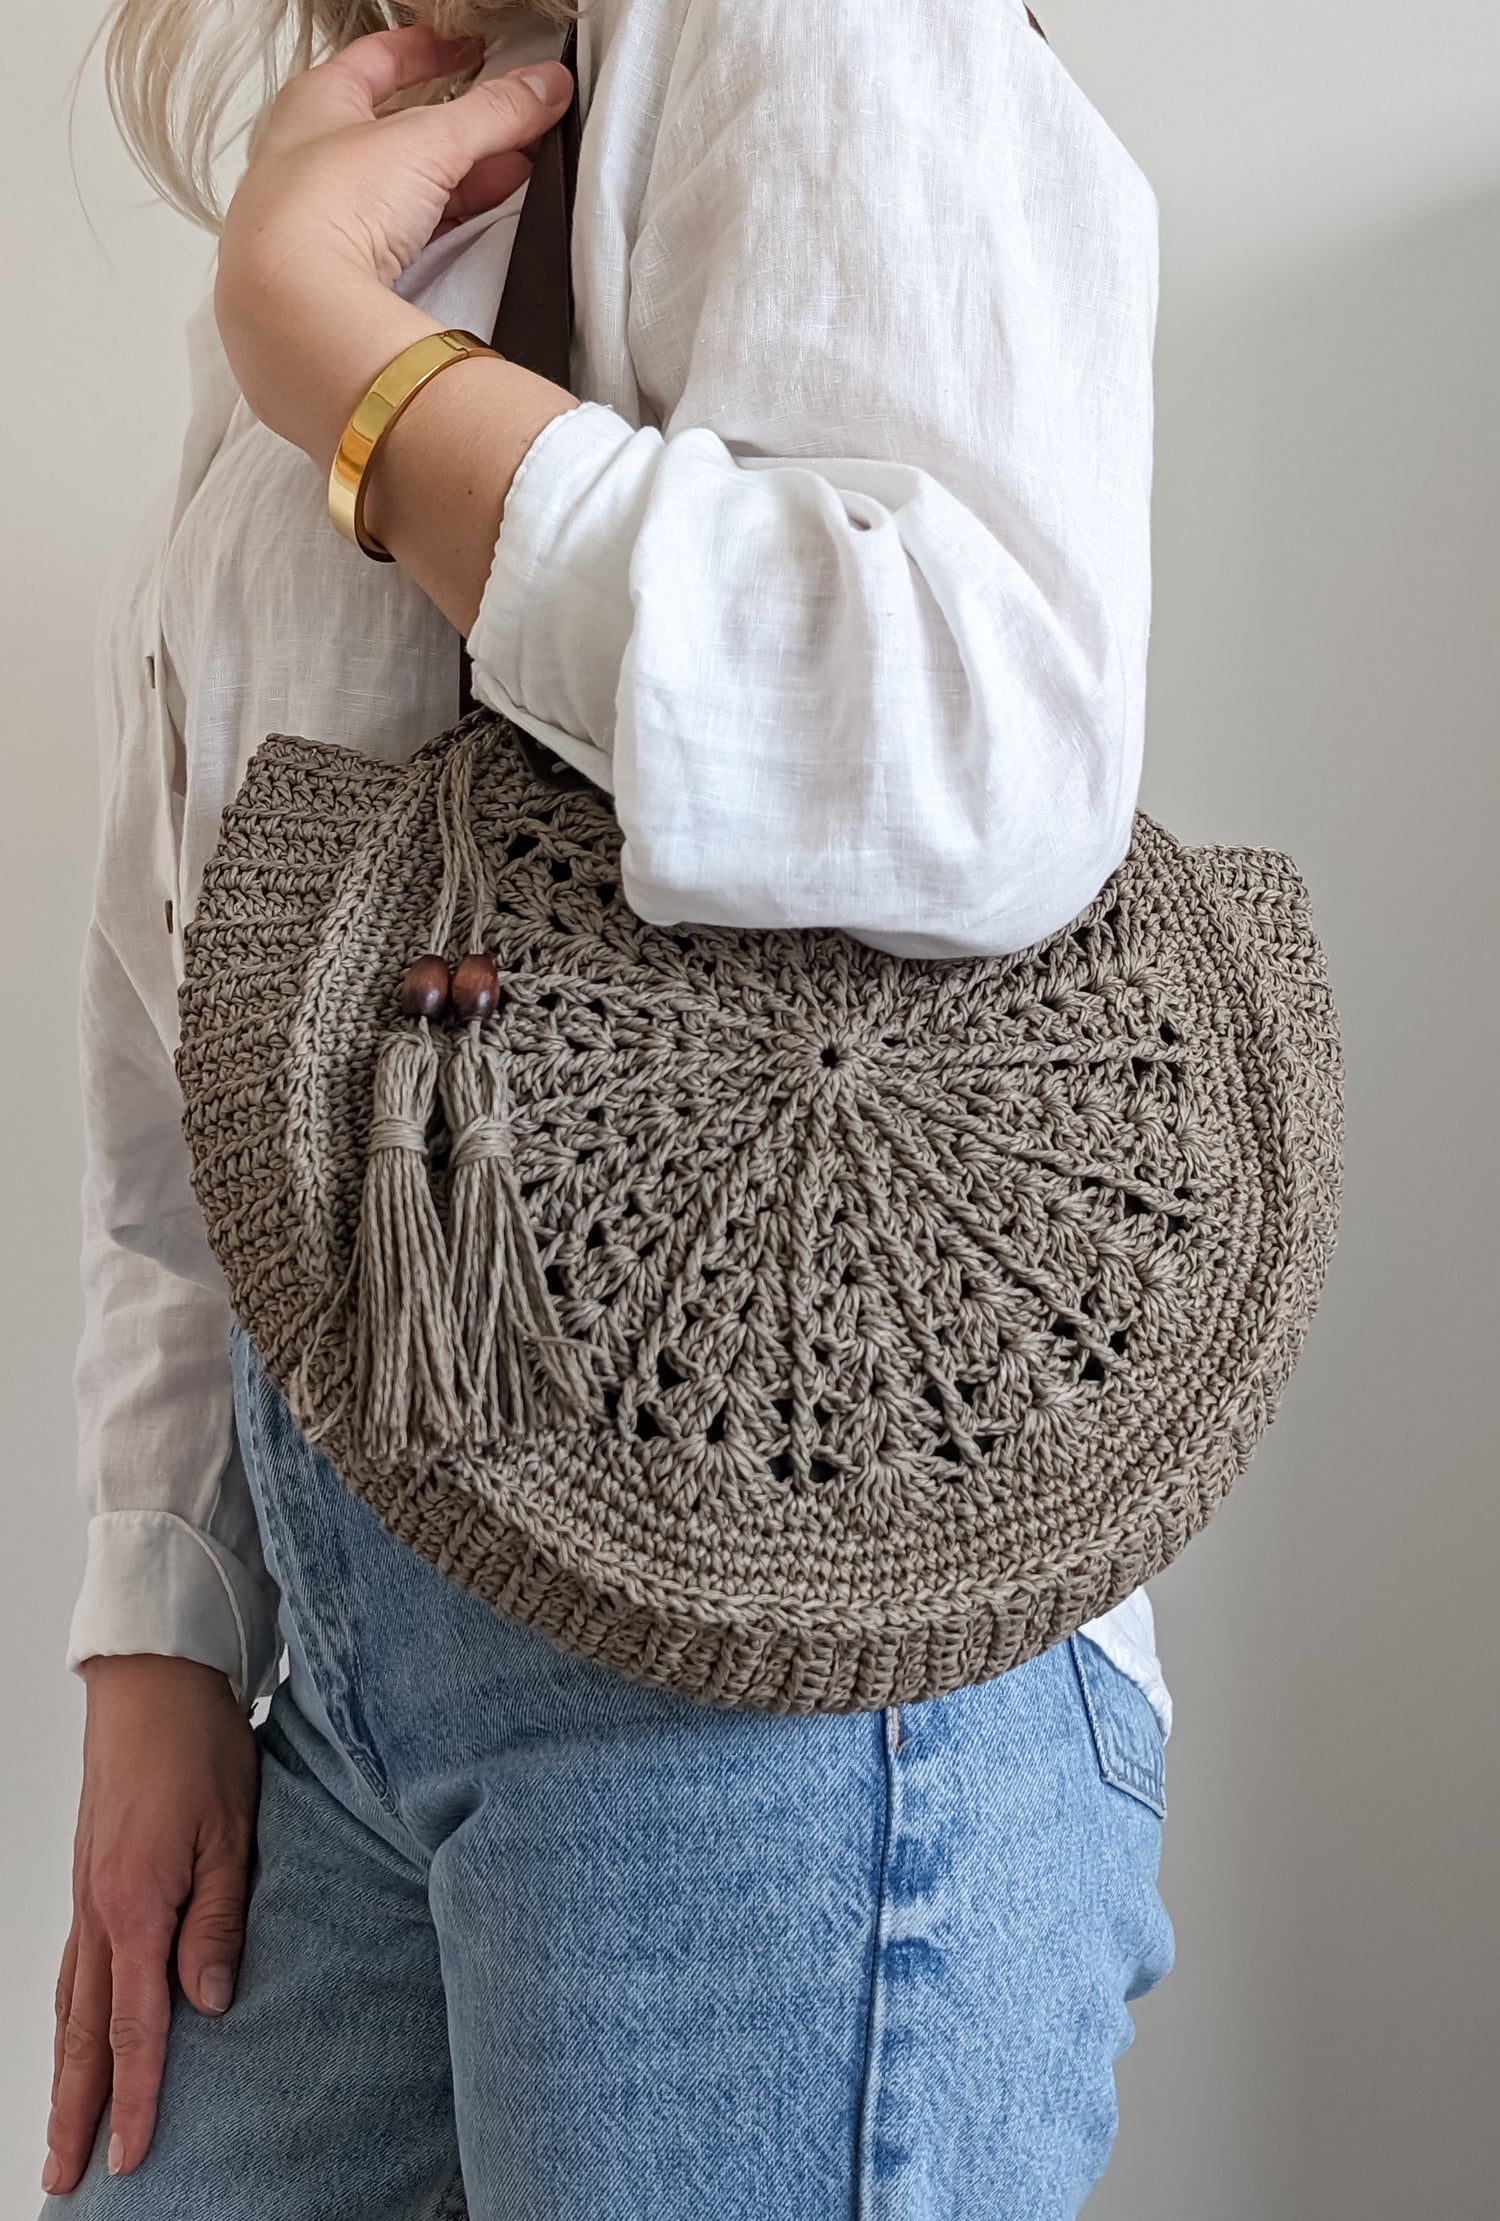 Crochet Summer Bags